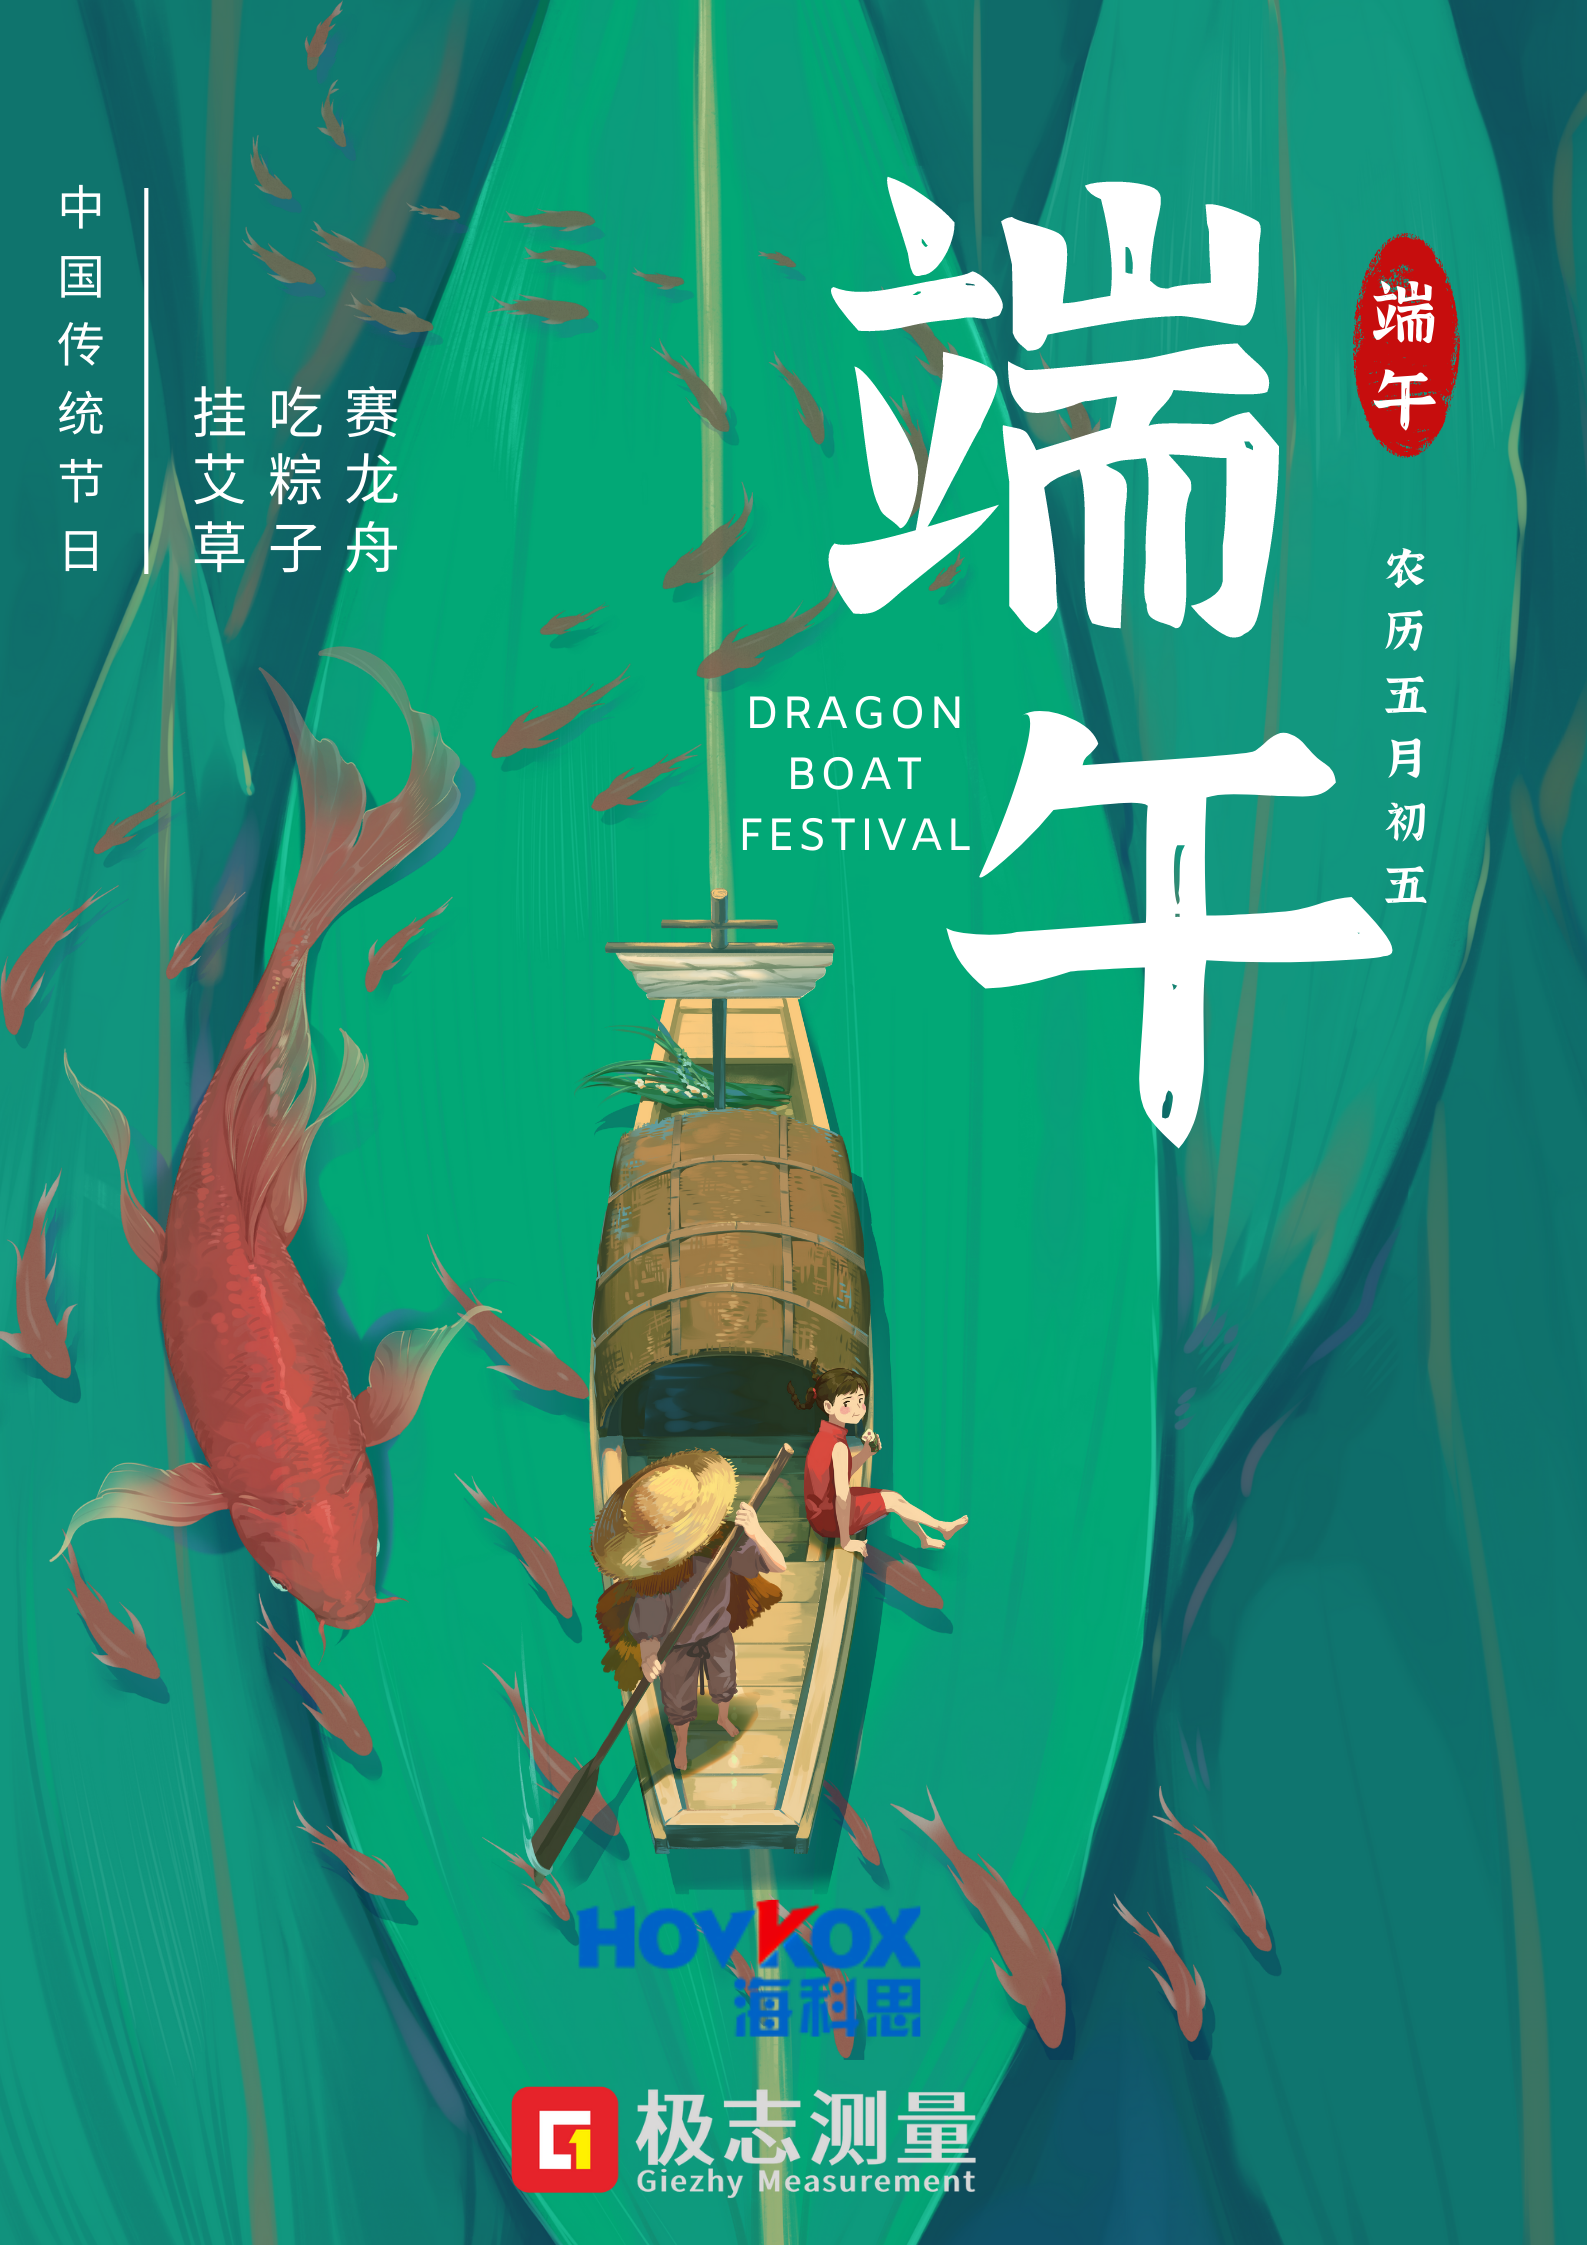 海科思极志端午节节日宣传中文海报